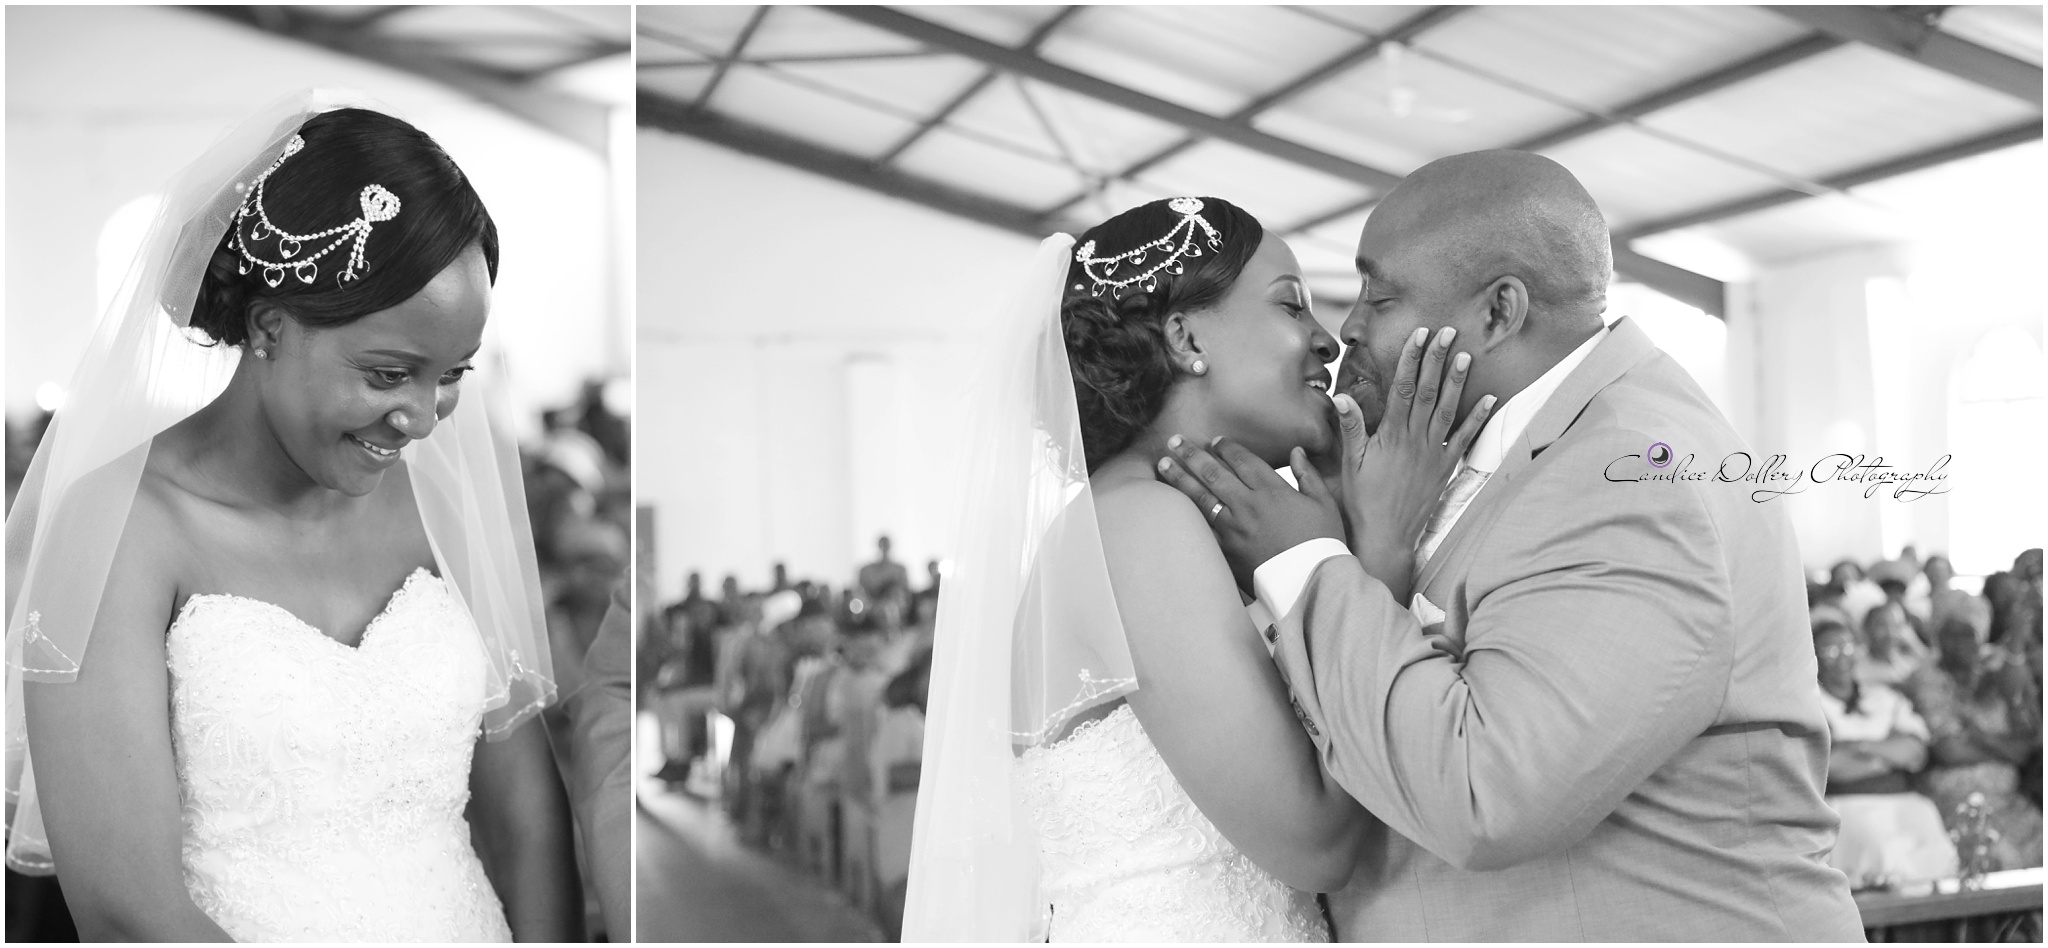 Masivuye & Khuselo's Wedding - Candice Dollery Photography_7259